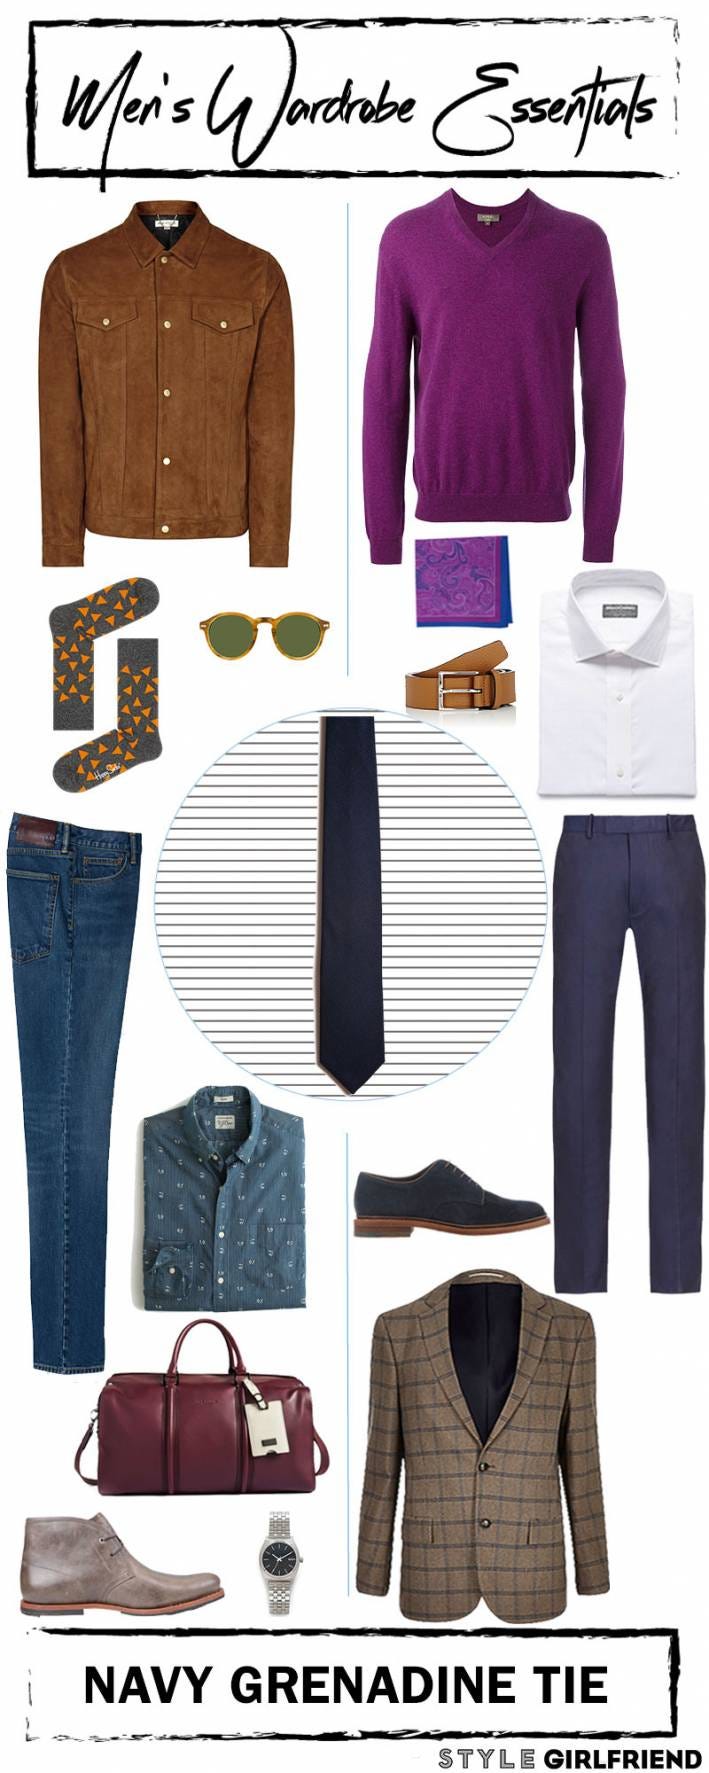 Men's Wardrobe Essential: Navy Grenadine Tie | Style Girlfriend